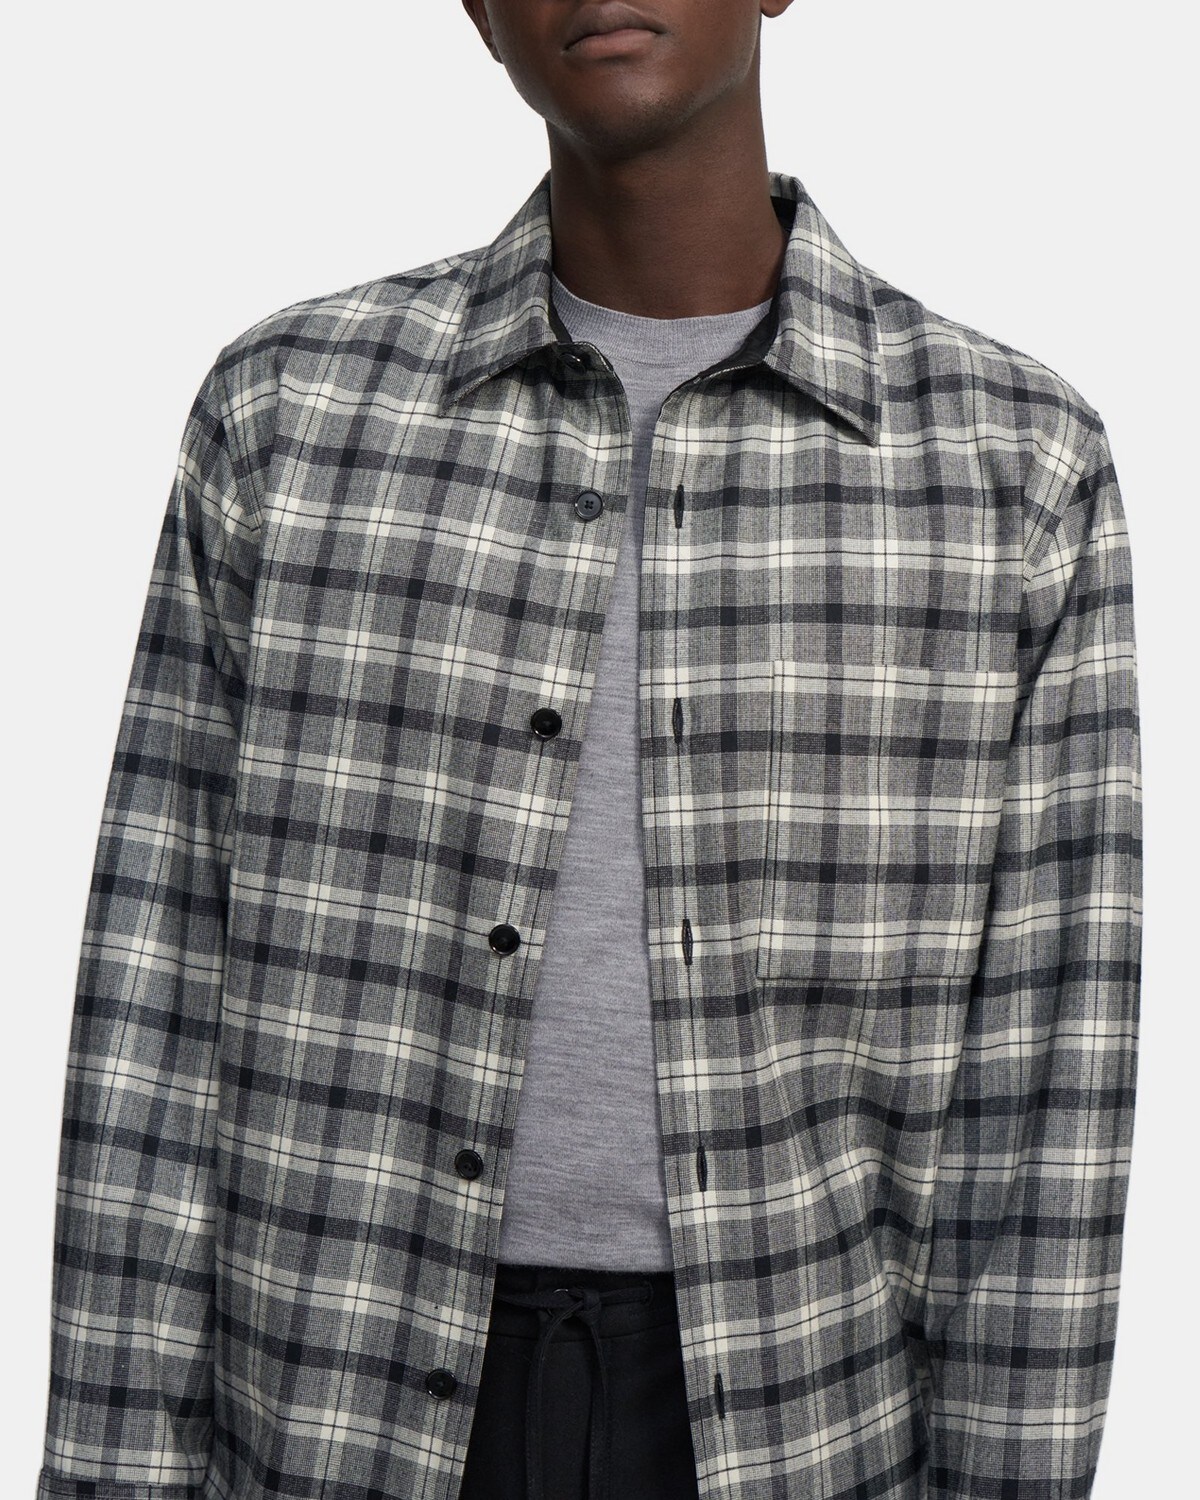 Clyfford Shirt Jacket in Plaid Flannel